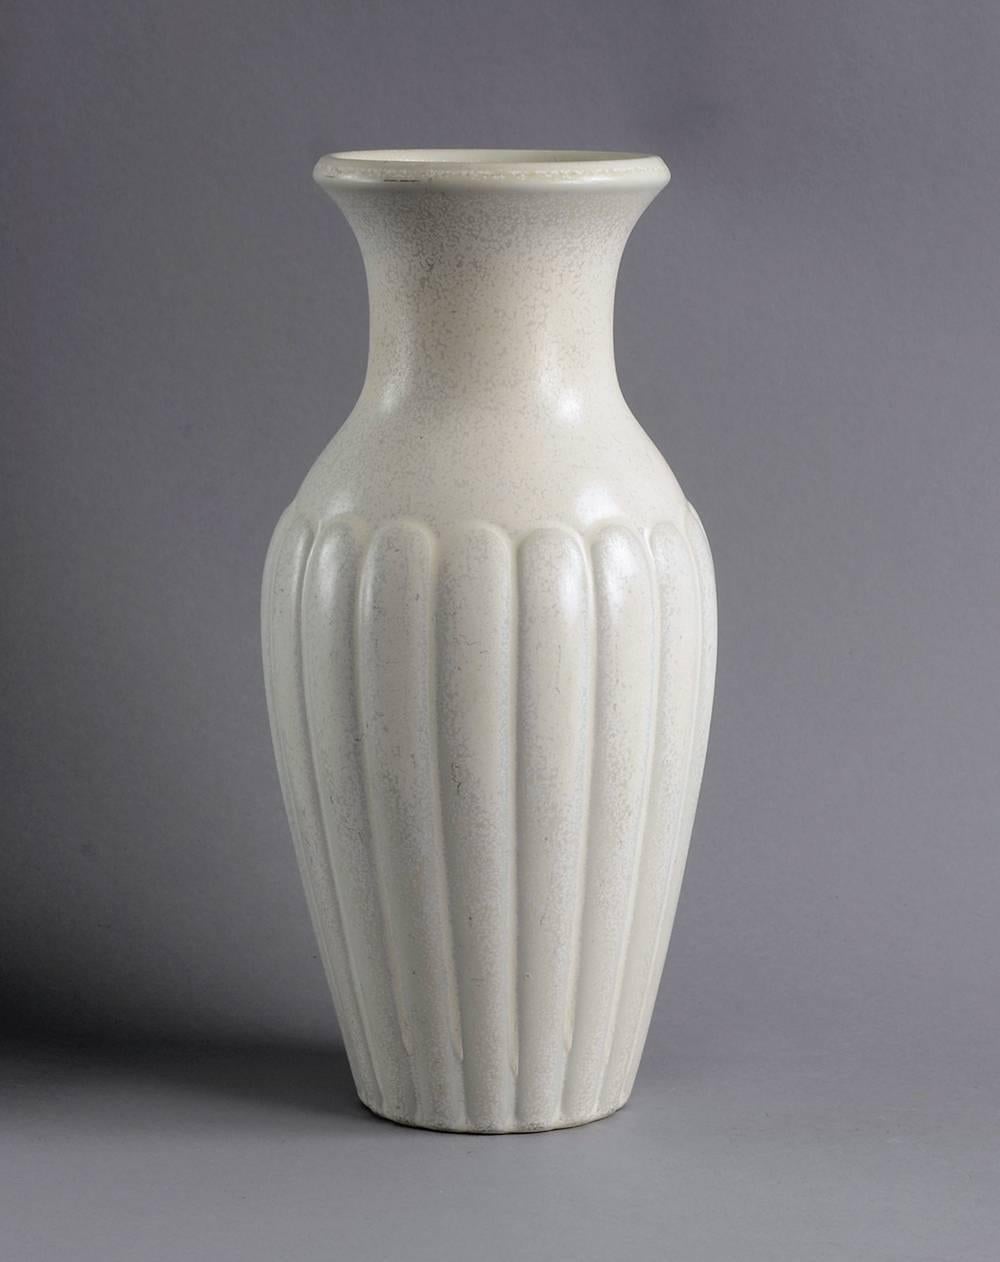 Gunnar Nylund for Rörstrand, Sweden
Stoneware vase with matte cream glaze, circa 1940s.
Height 12 1/2